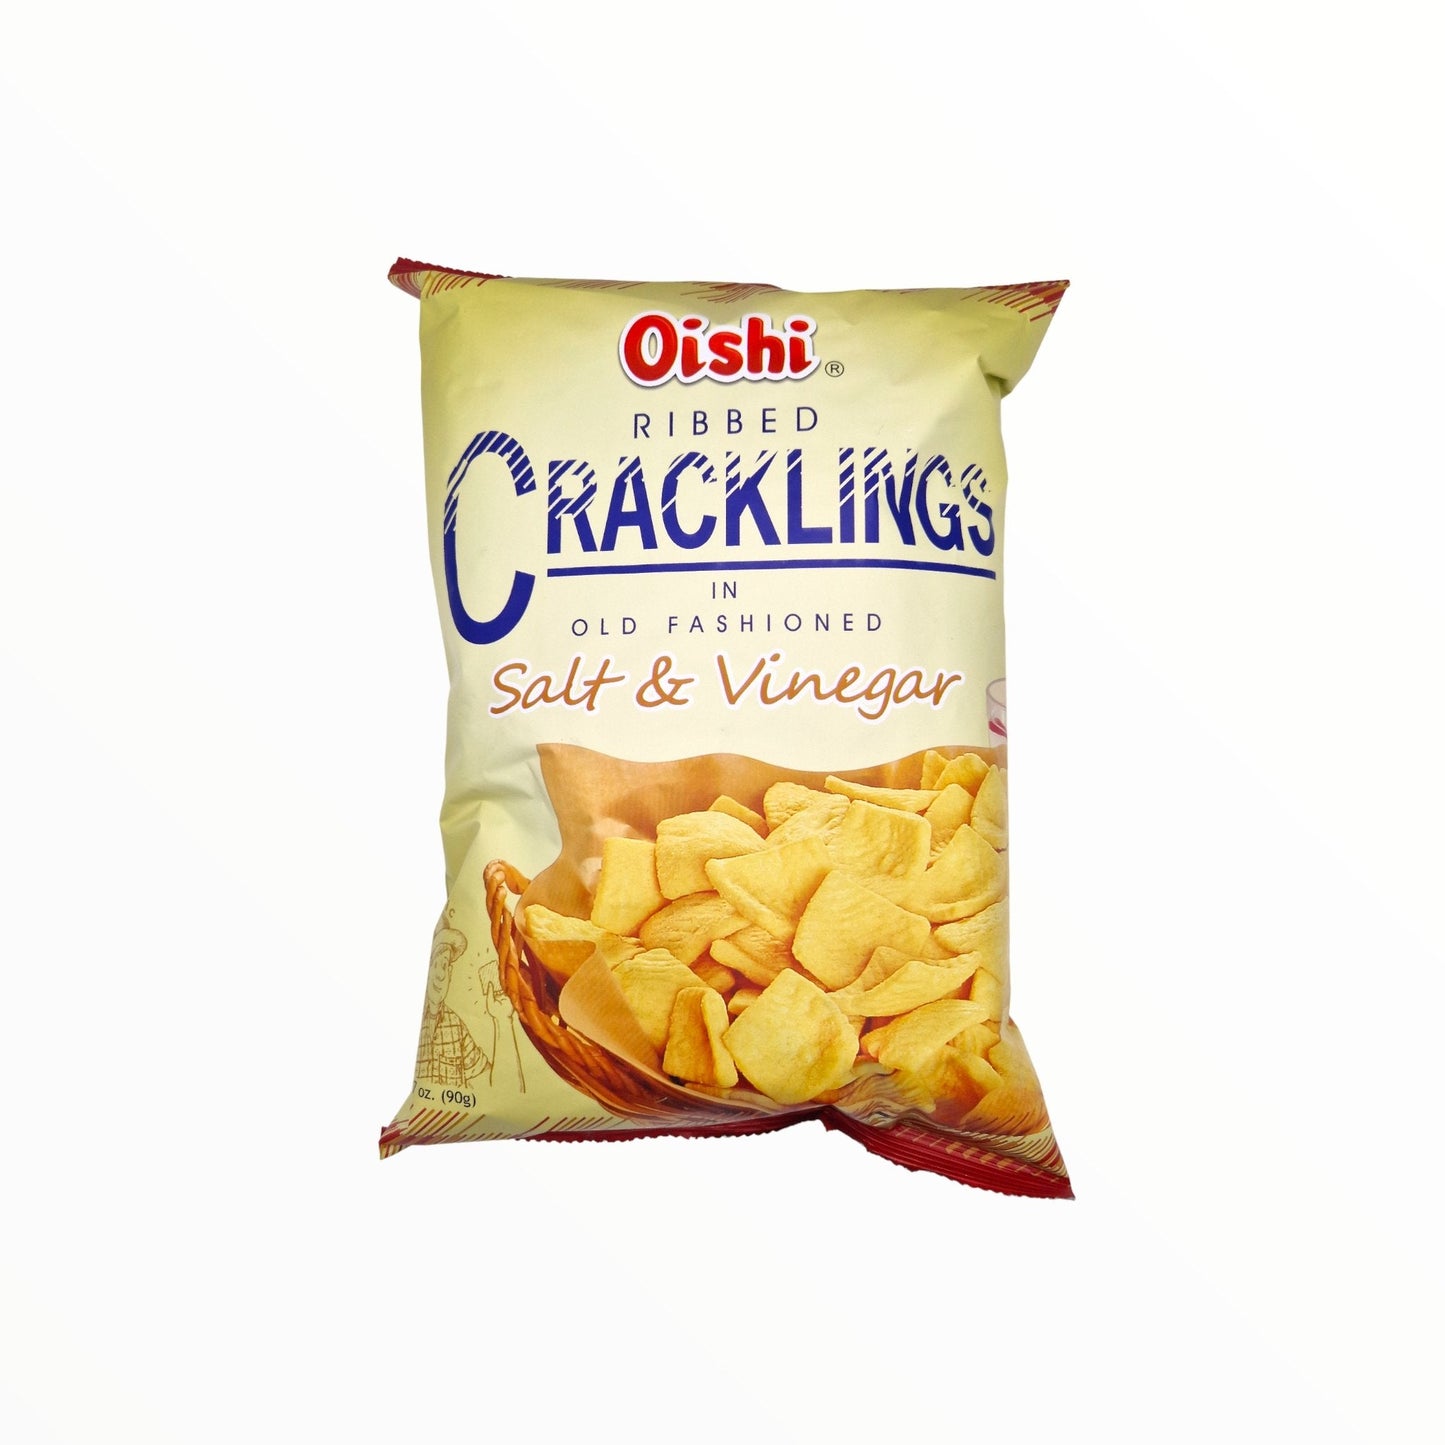 Cracklings Salt & Vinegar 90g - Mabuhay Pinoy Asia Shop